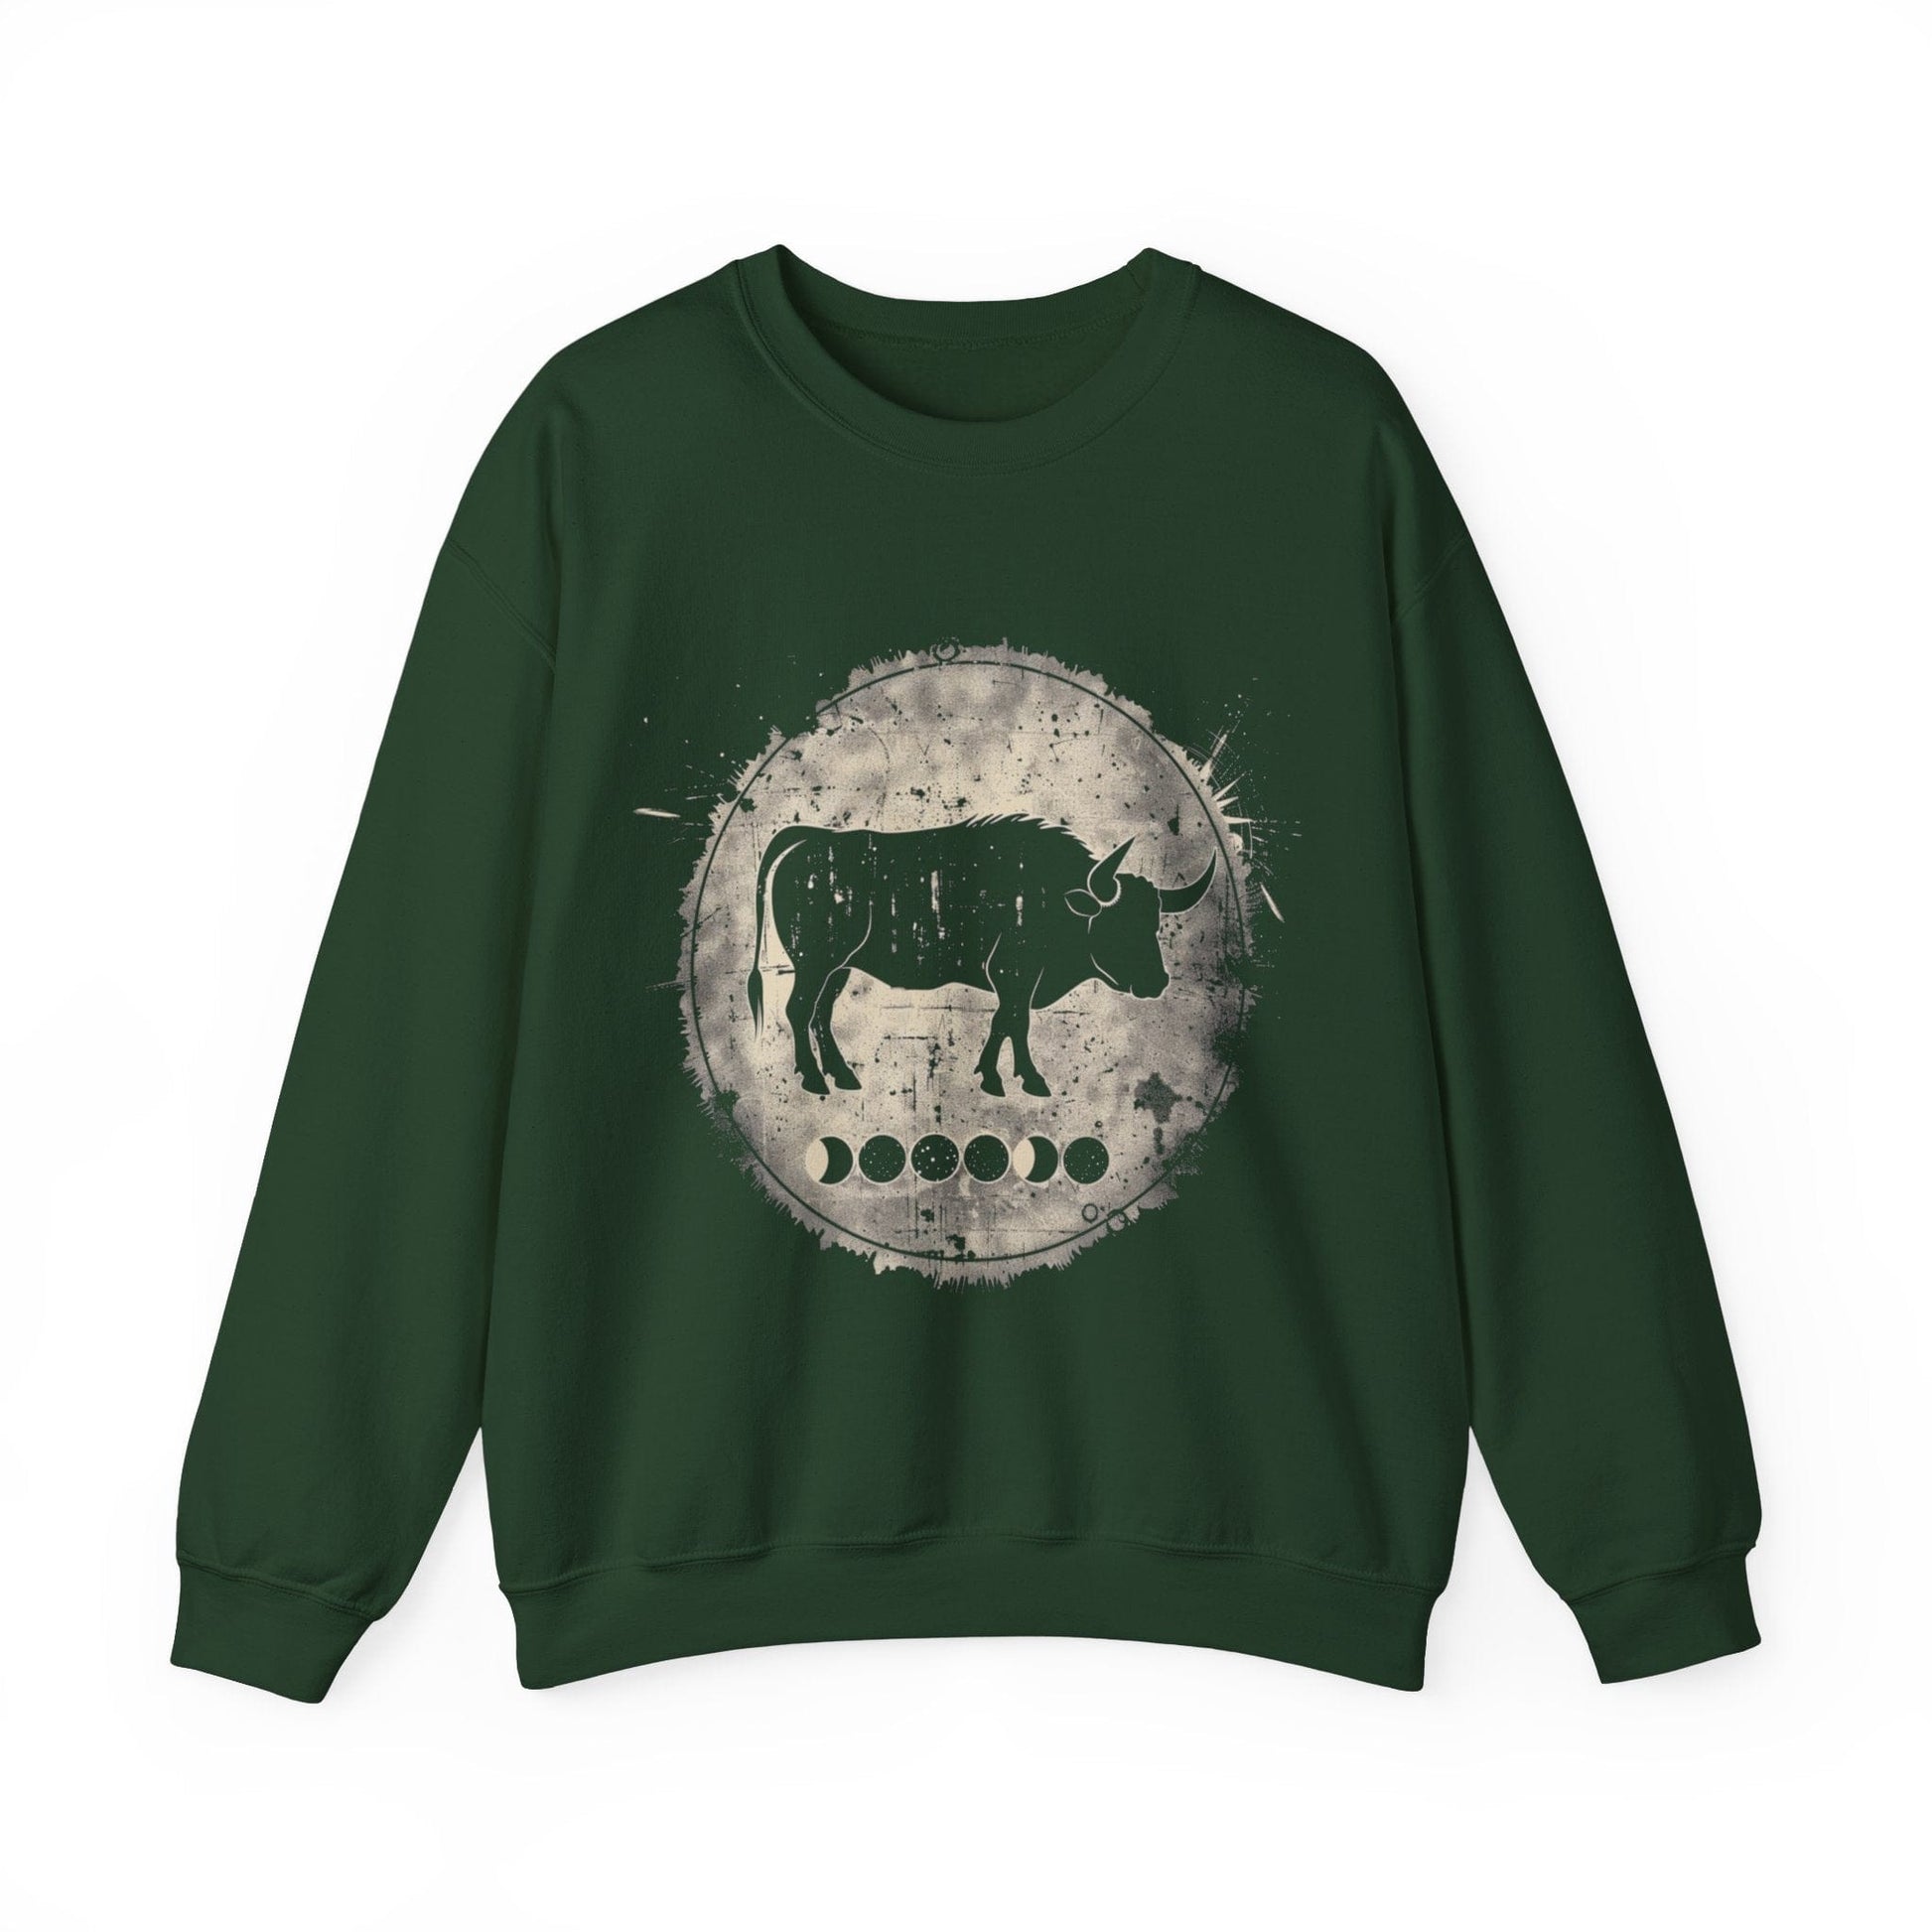 Sweatshirt S / Forest Green Taurus Lunar Phase Sweater